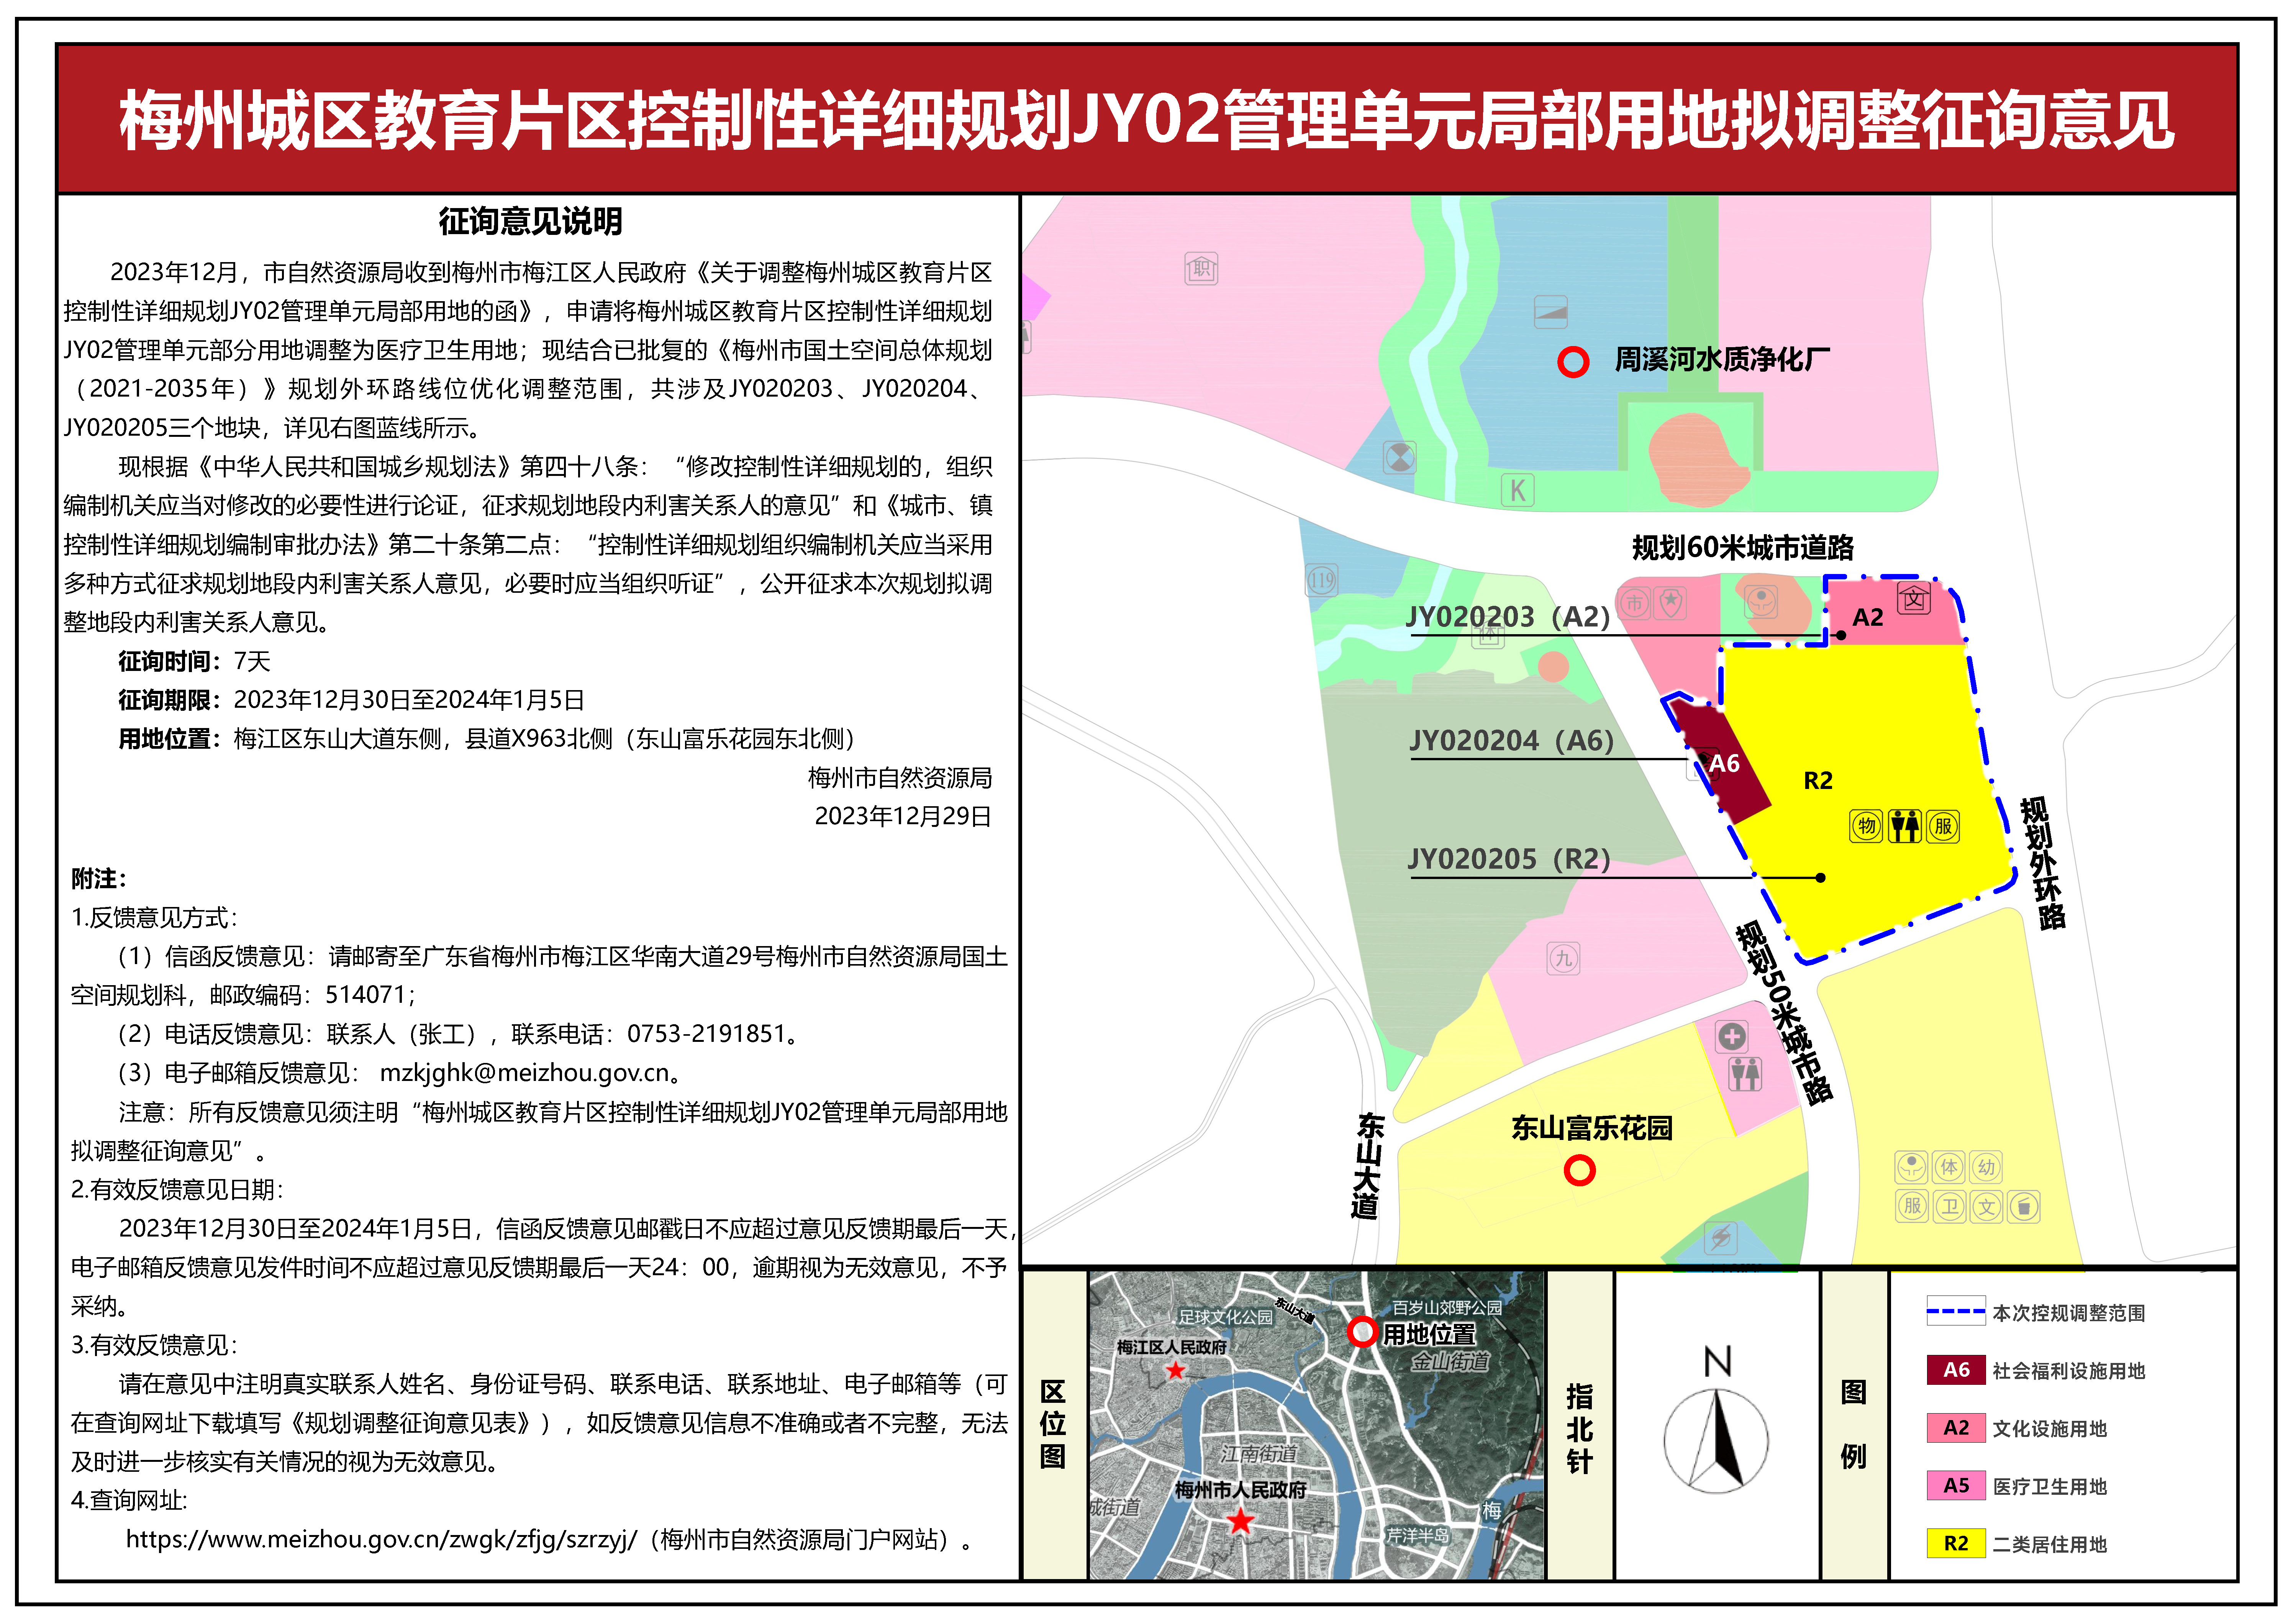 梅州城区教育片区控制性详细规划JY02管理单元局部用地拟调整征询意见公示(1).jpg